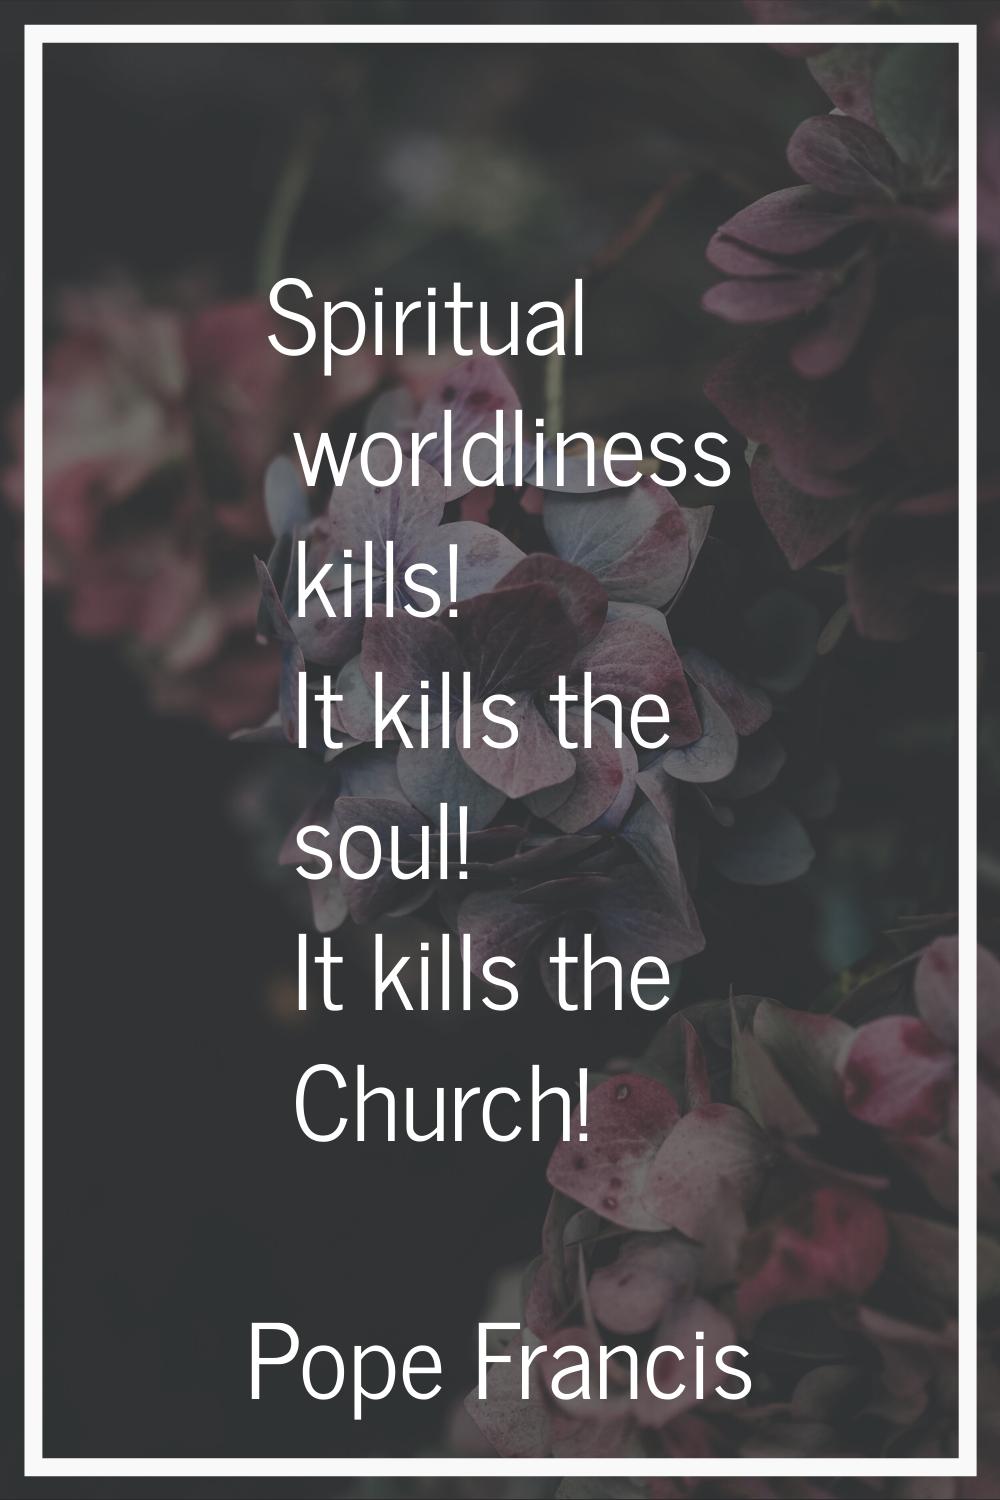 Spiritual worldliness kills! It kills the soul! It kills the Church!